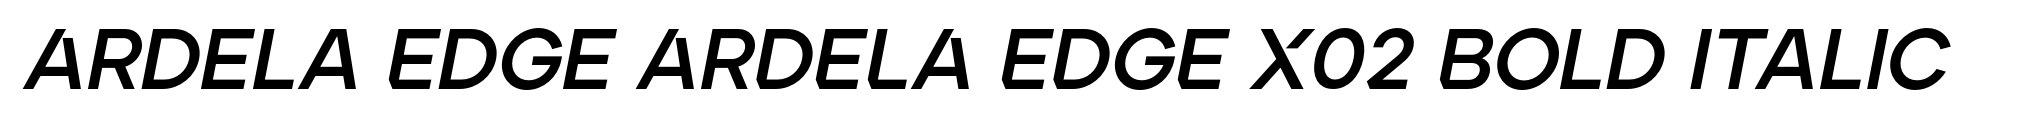 Ardela Edge ARDELA EDGE X02 Bold Italic image